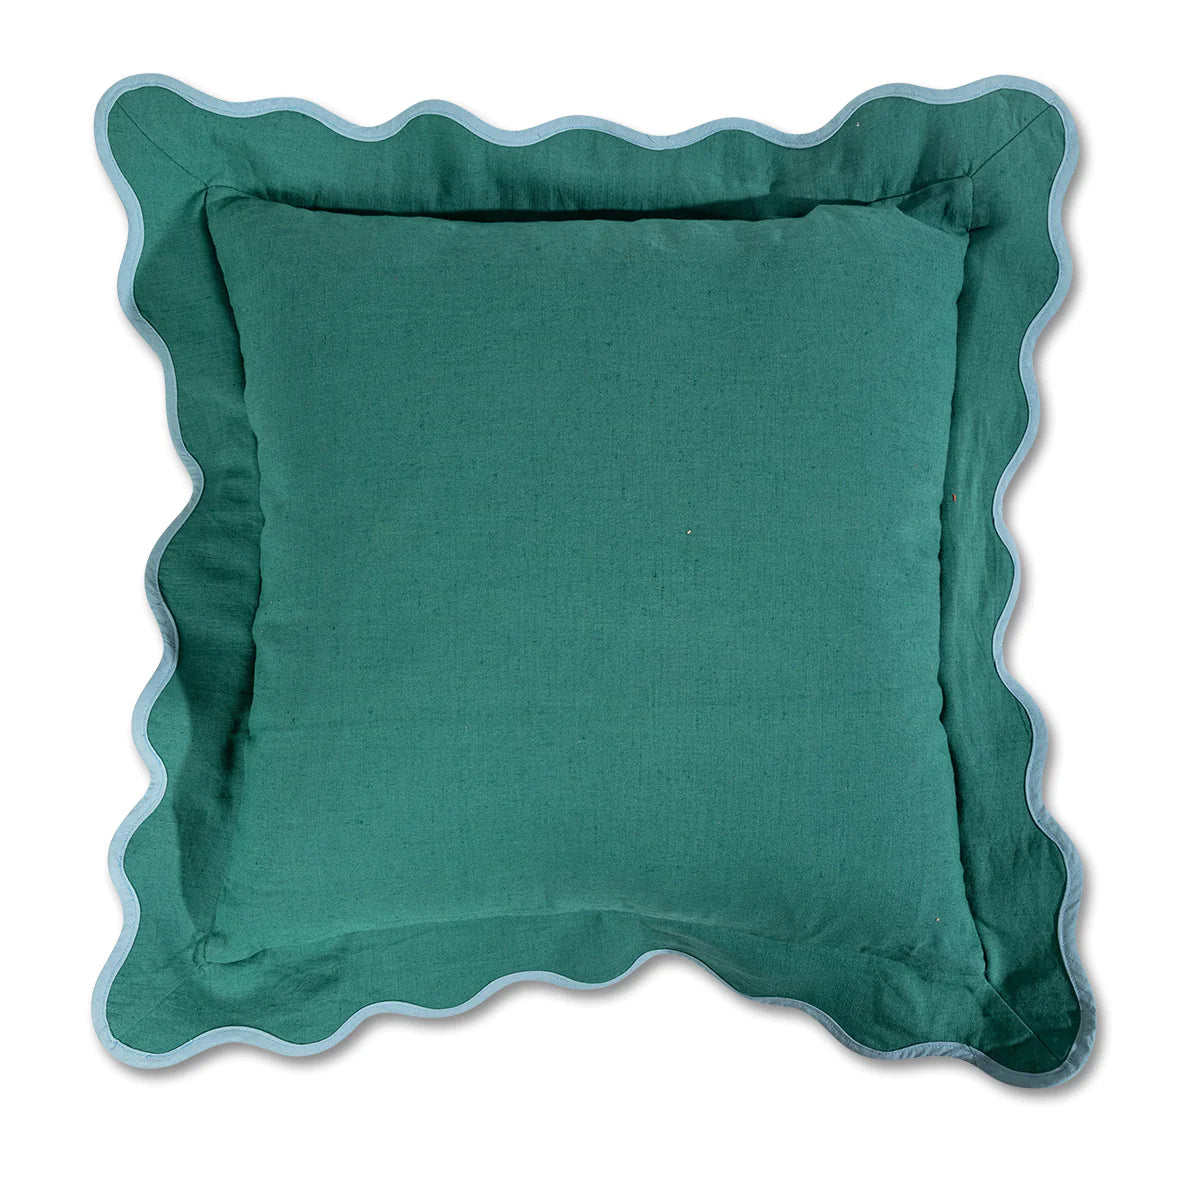 Darcy Green & Aqua Linen Pillow